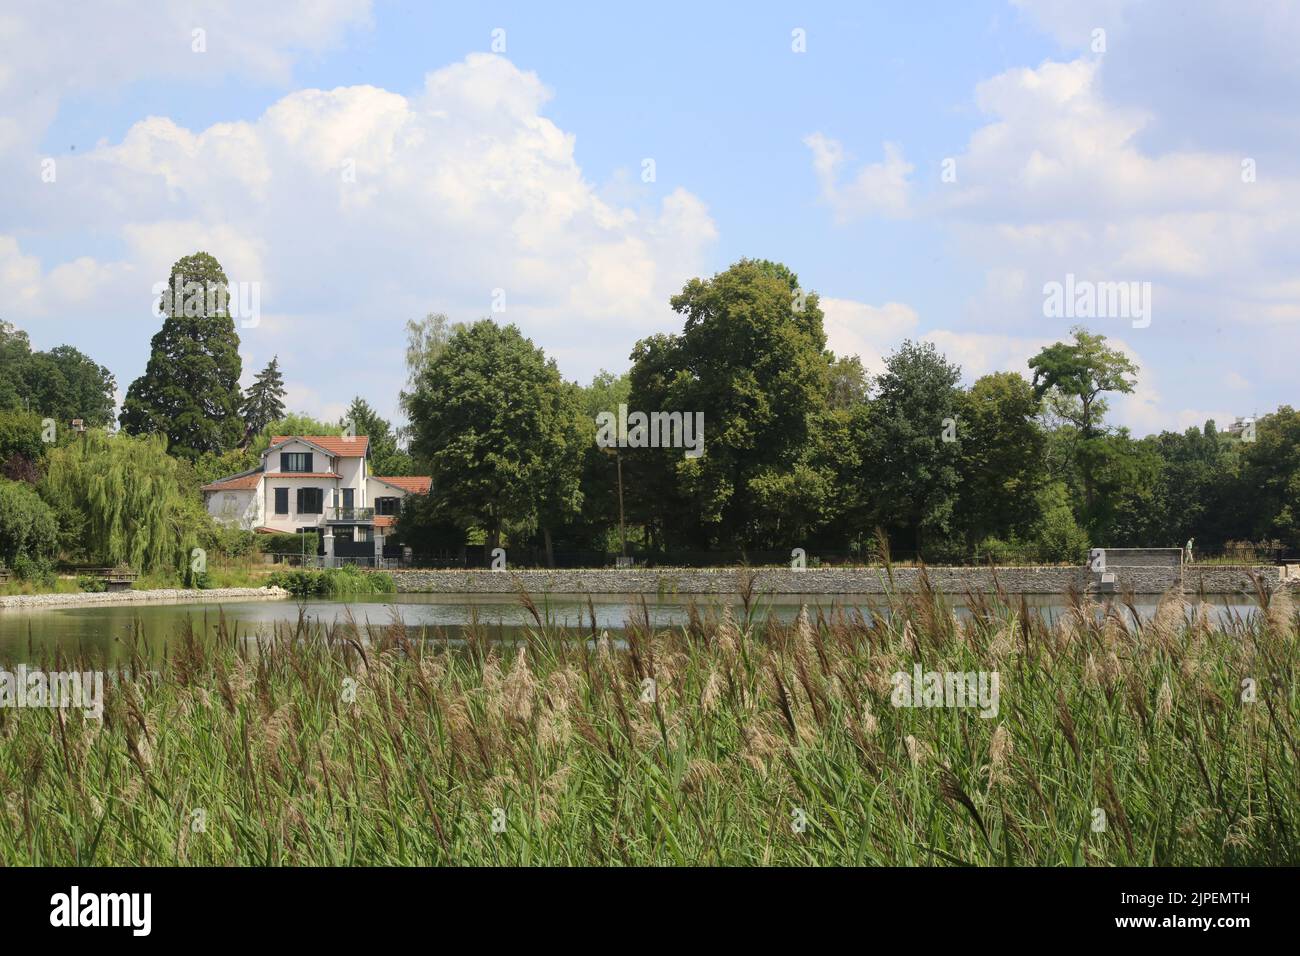 Dégradation écologique. Les étangs de Corot. Ville d'Avray. Haut-de-Seine. Ile-de-France. France. Europe. Stock Photo